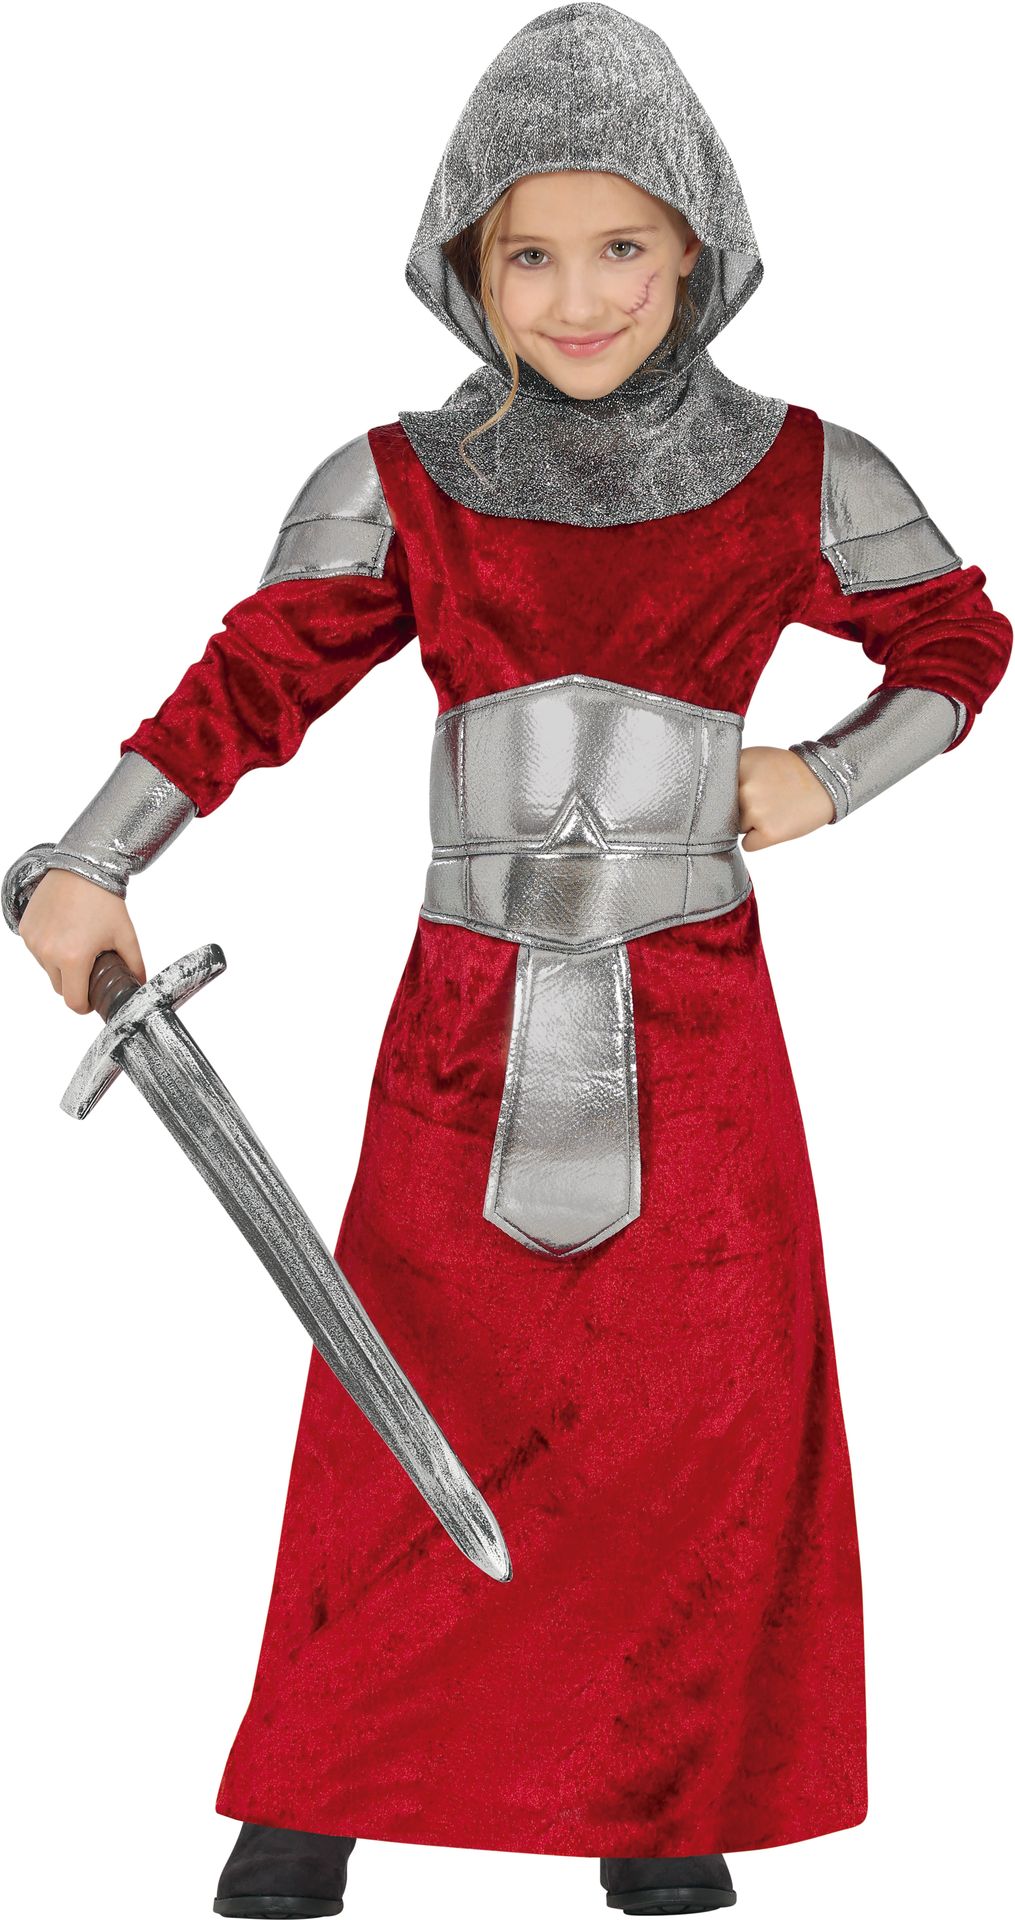 Middeleeuwse ridder outfit meisje